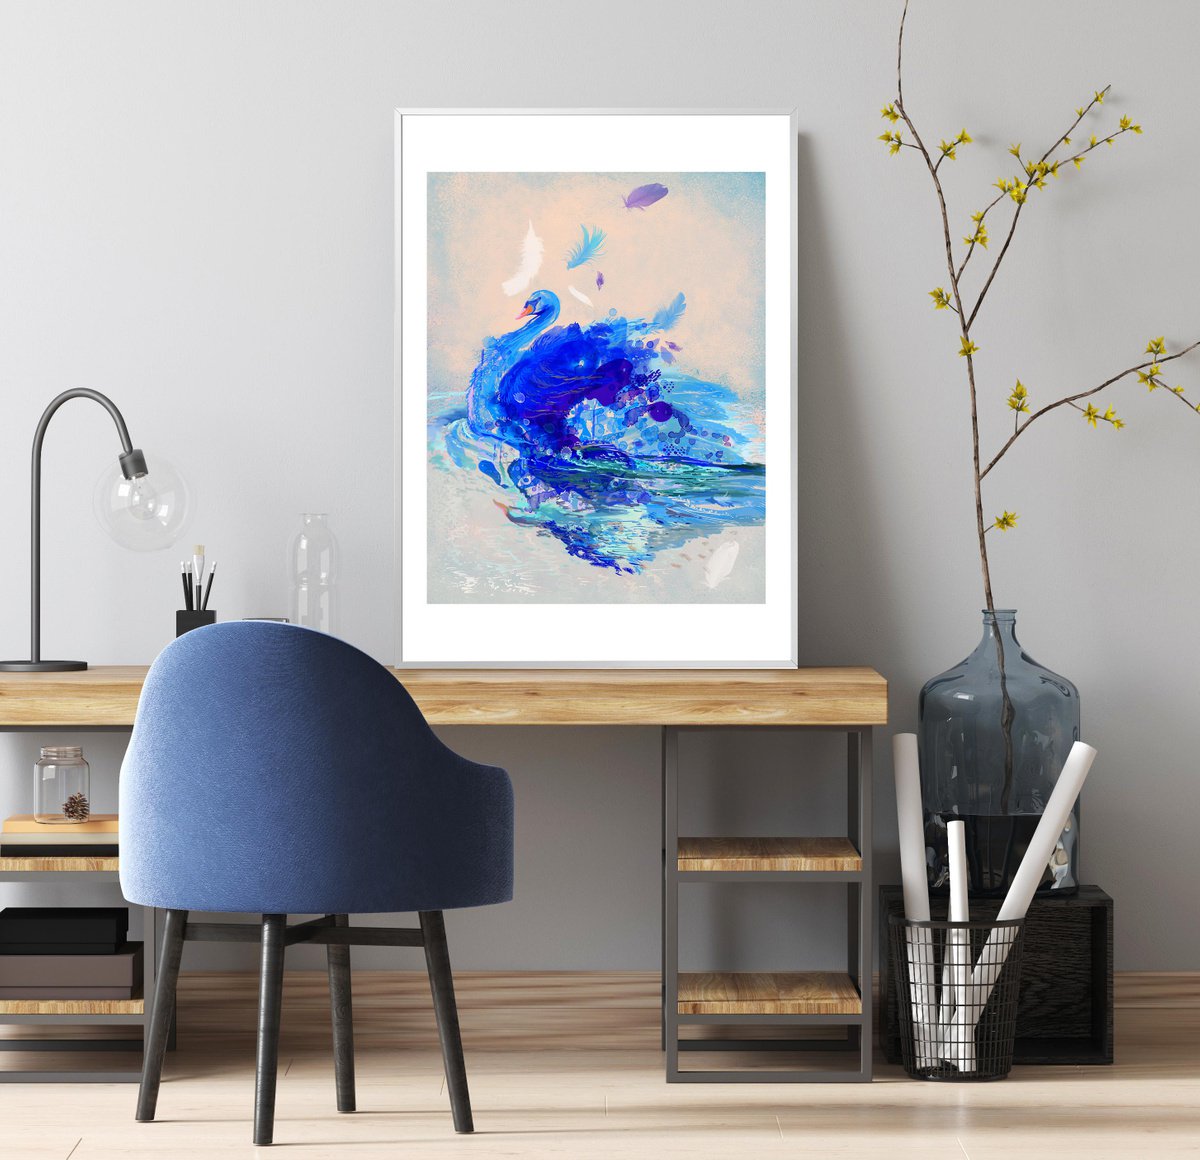 Blue Swan - Digital Art, Limited Edition (Framed) by Milena Gaytandzhieva